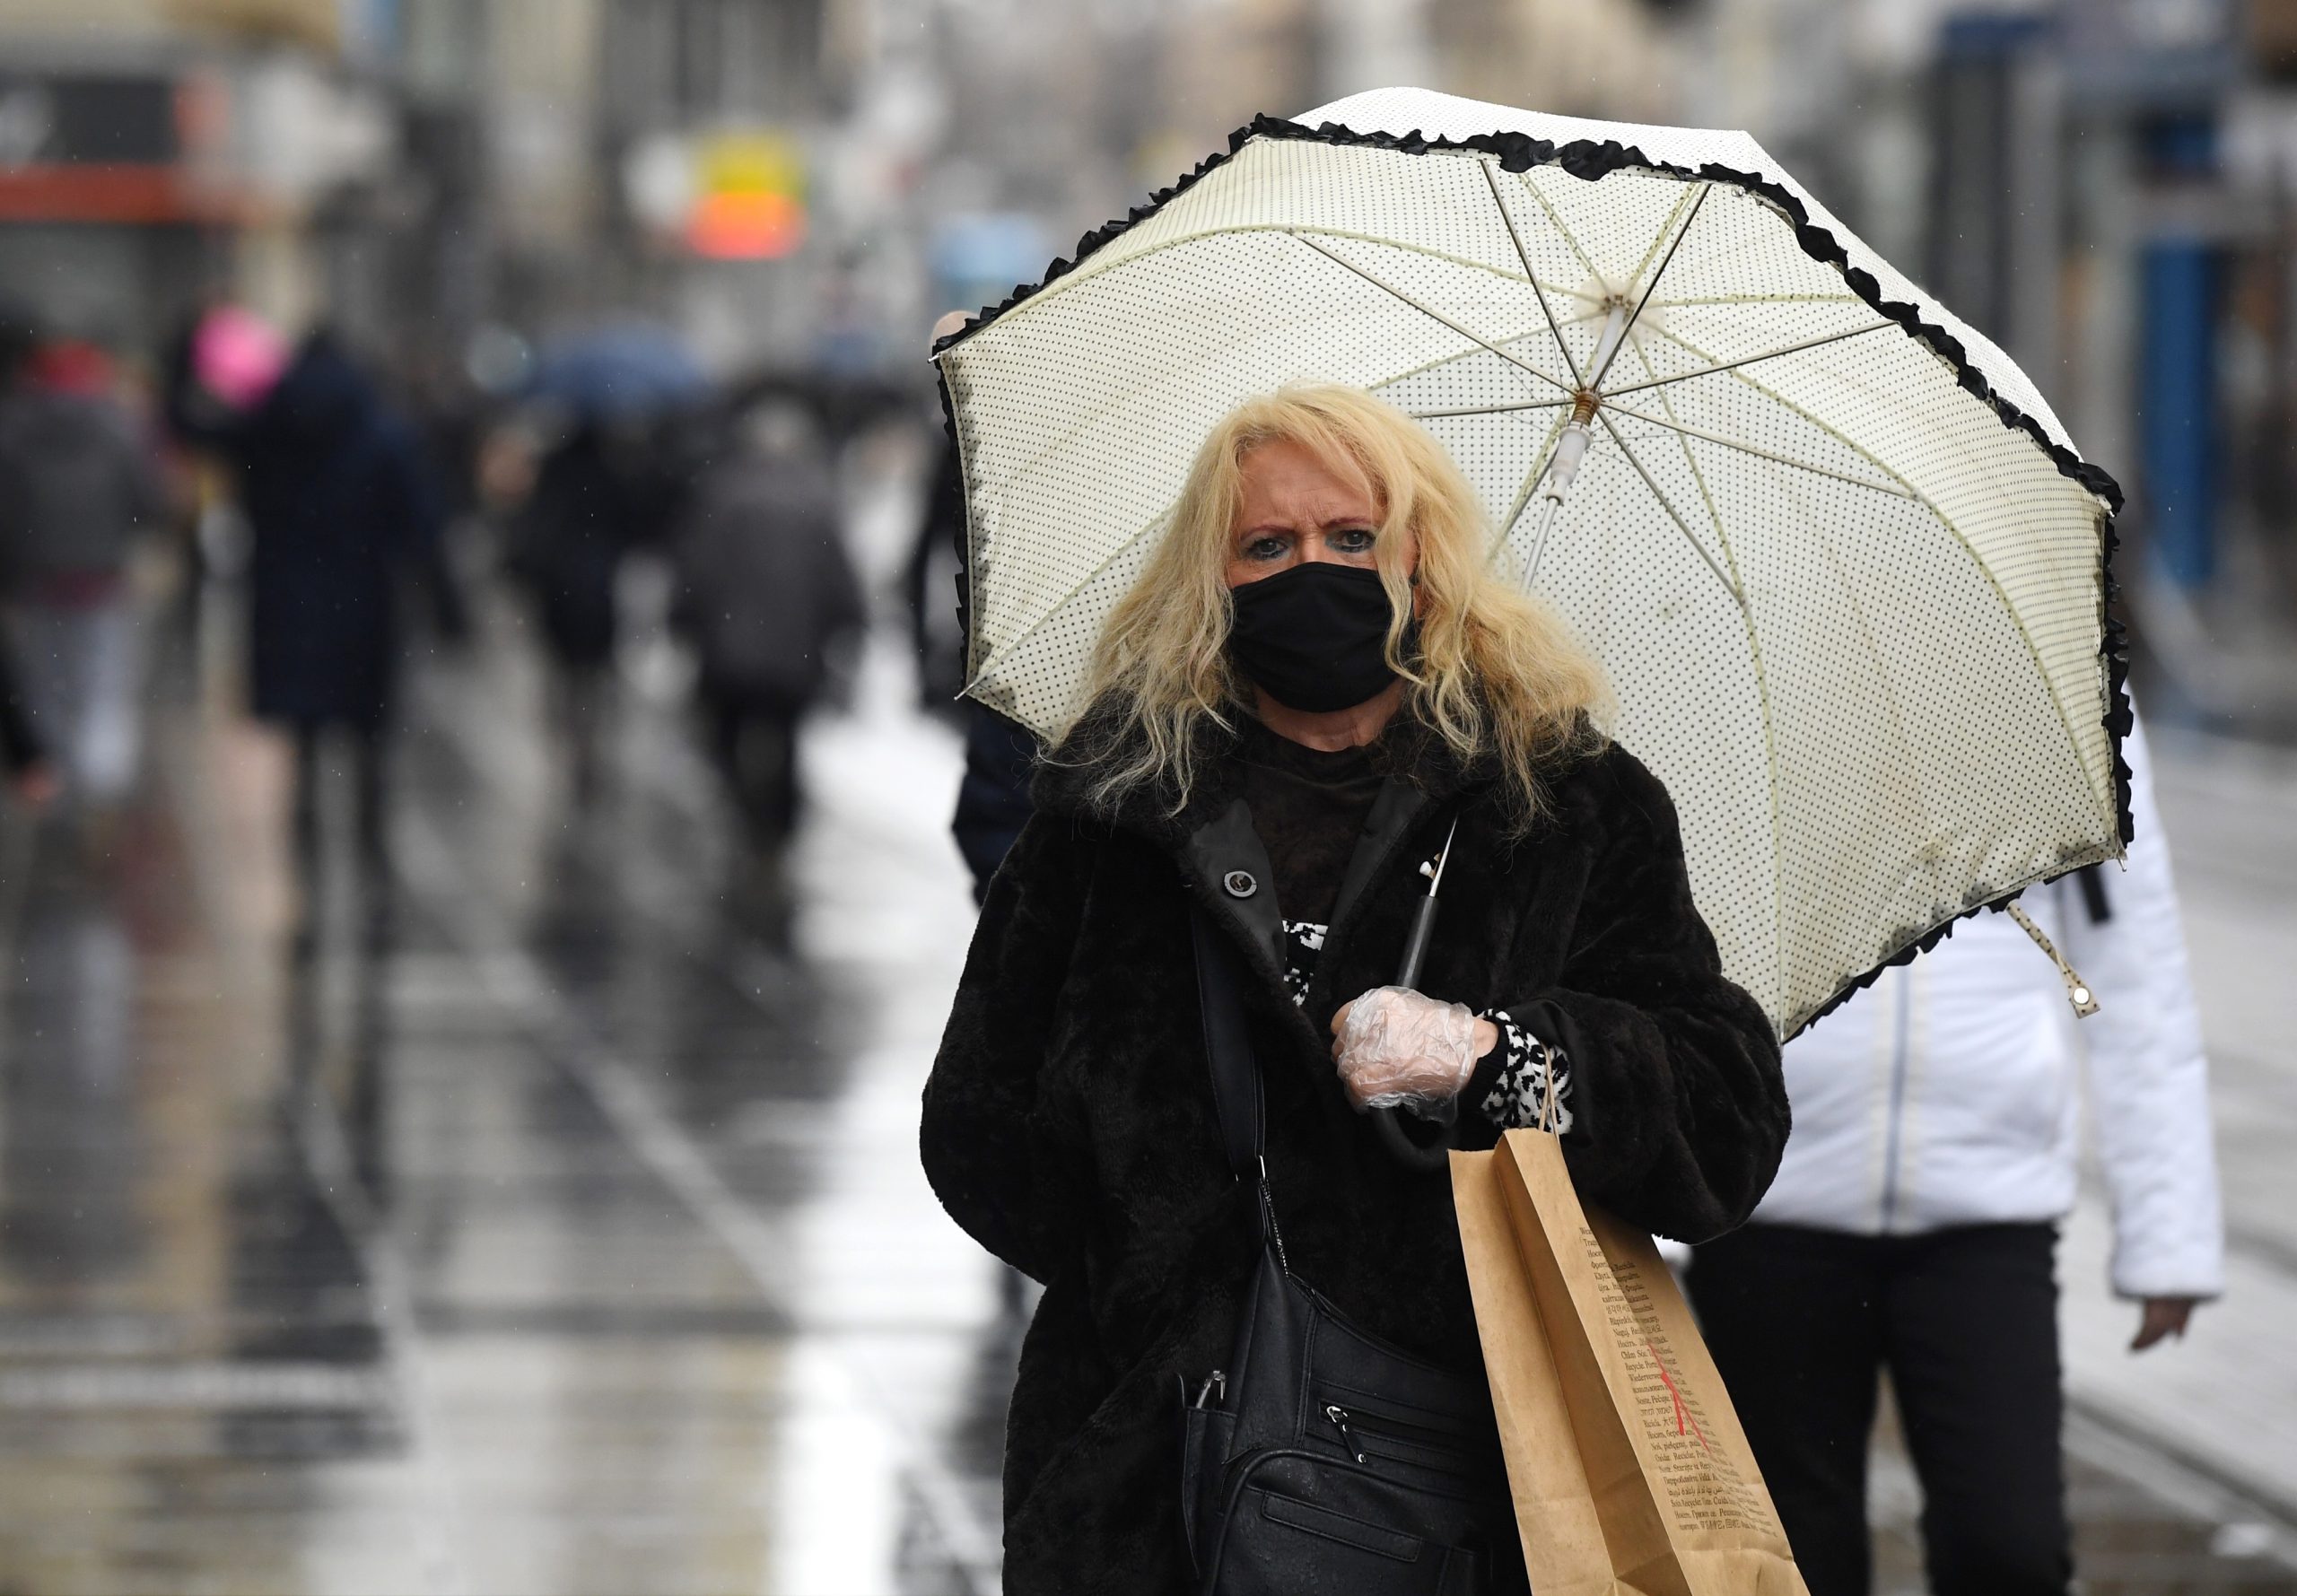 31.12.2020., Zagreb - Setnja gradom zadnji dan godine koja je bila drugacija nego inace. Tramvaji provozili centrom, ljudi i dalje hodaju s maskama. 
Photo: Marko Lukunic/PIXSELL